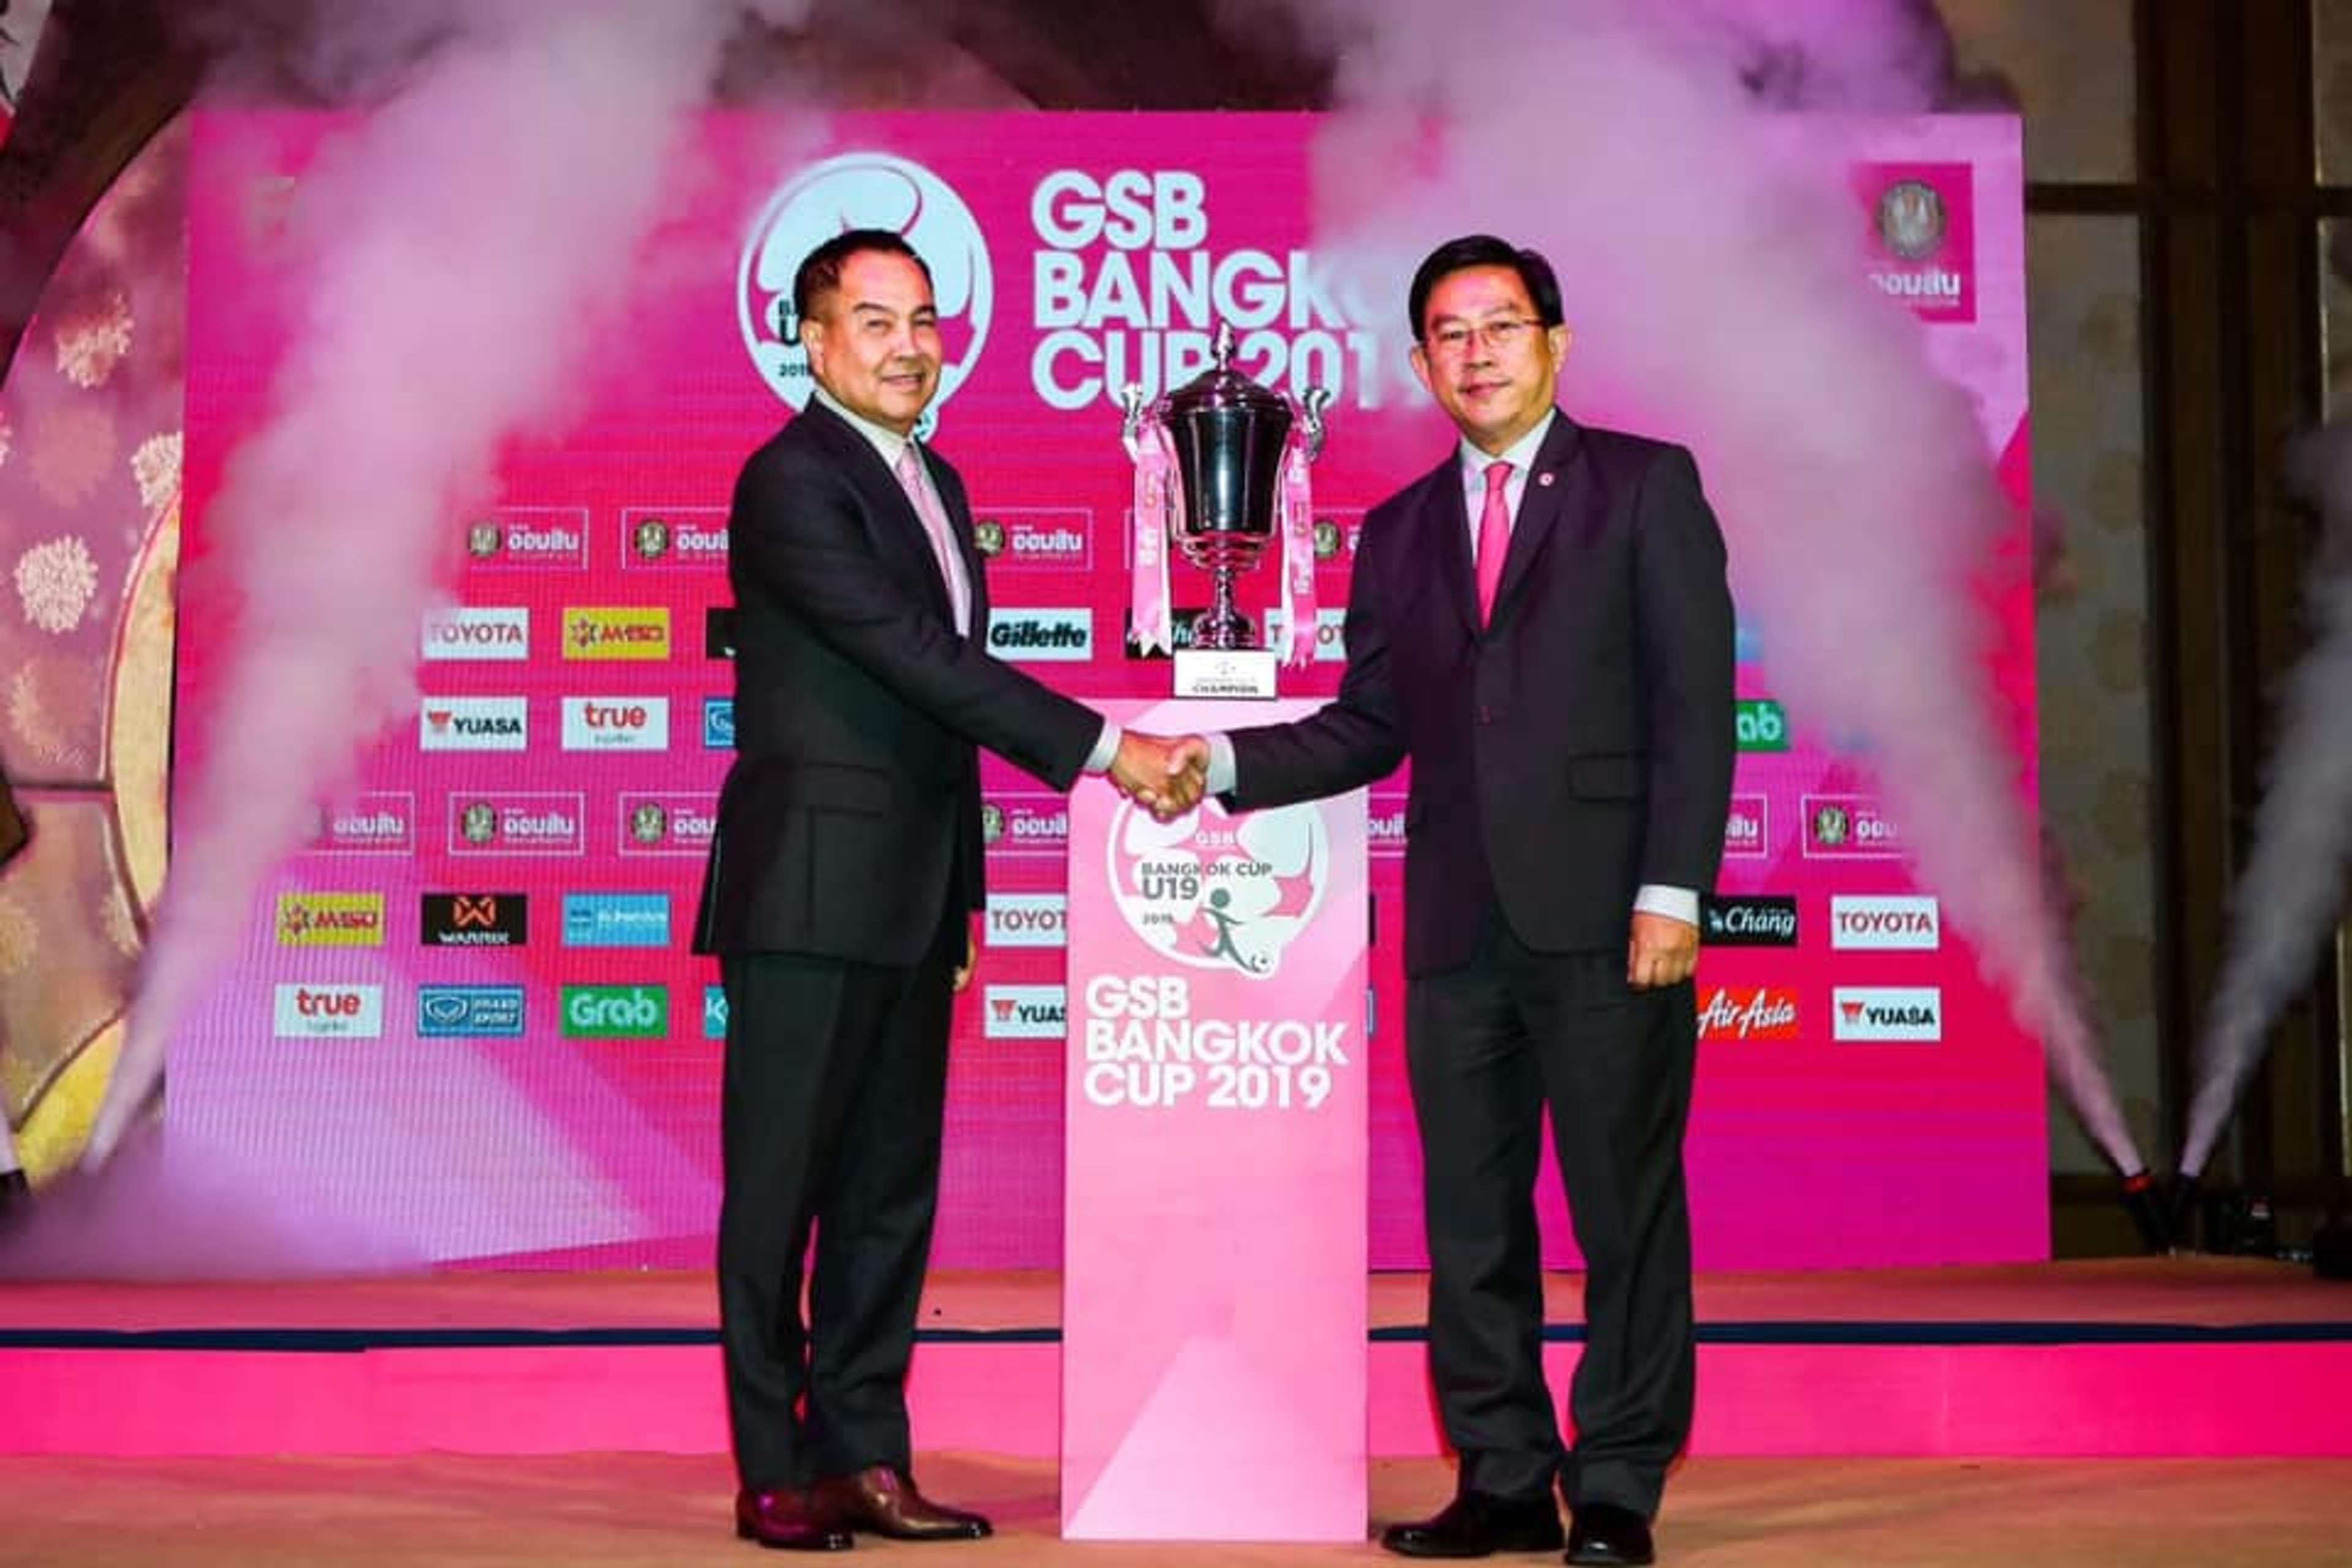 GSB Bangkok Cup 2019